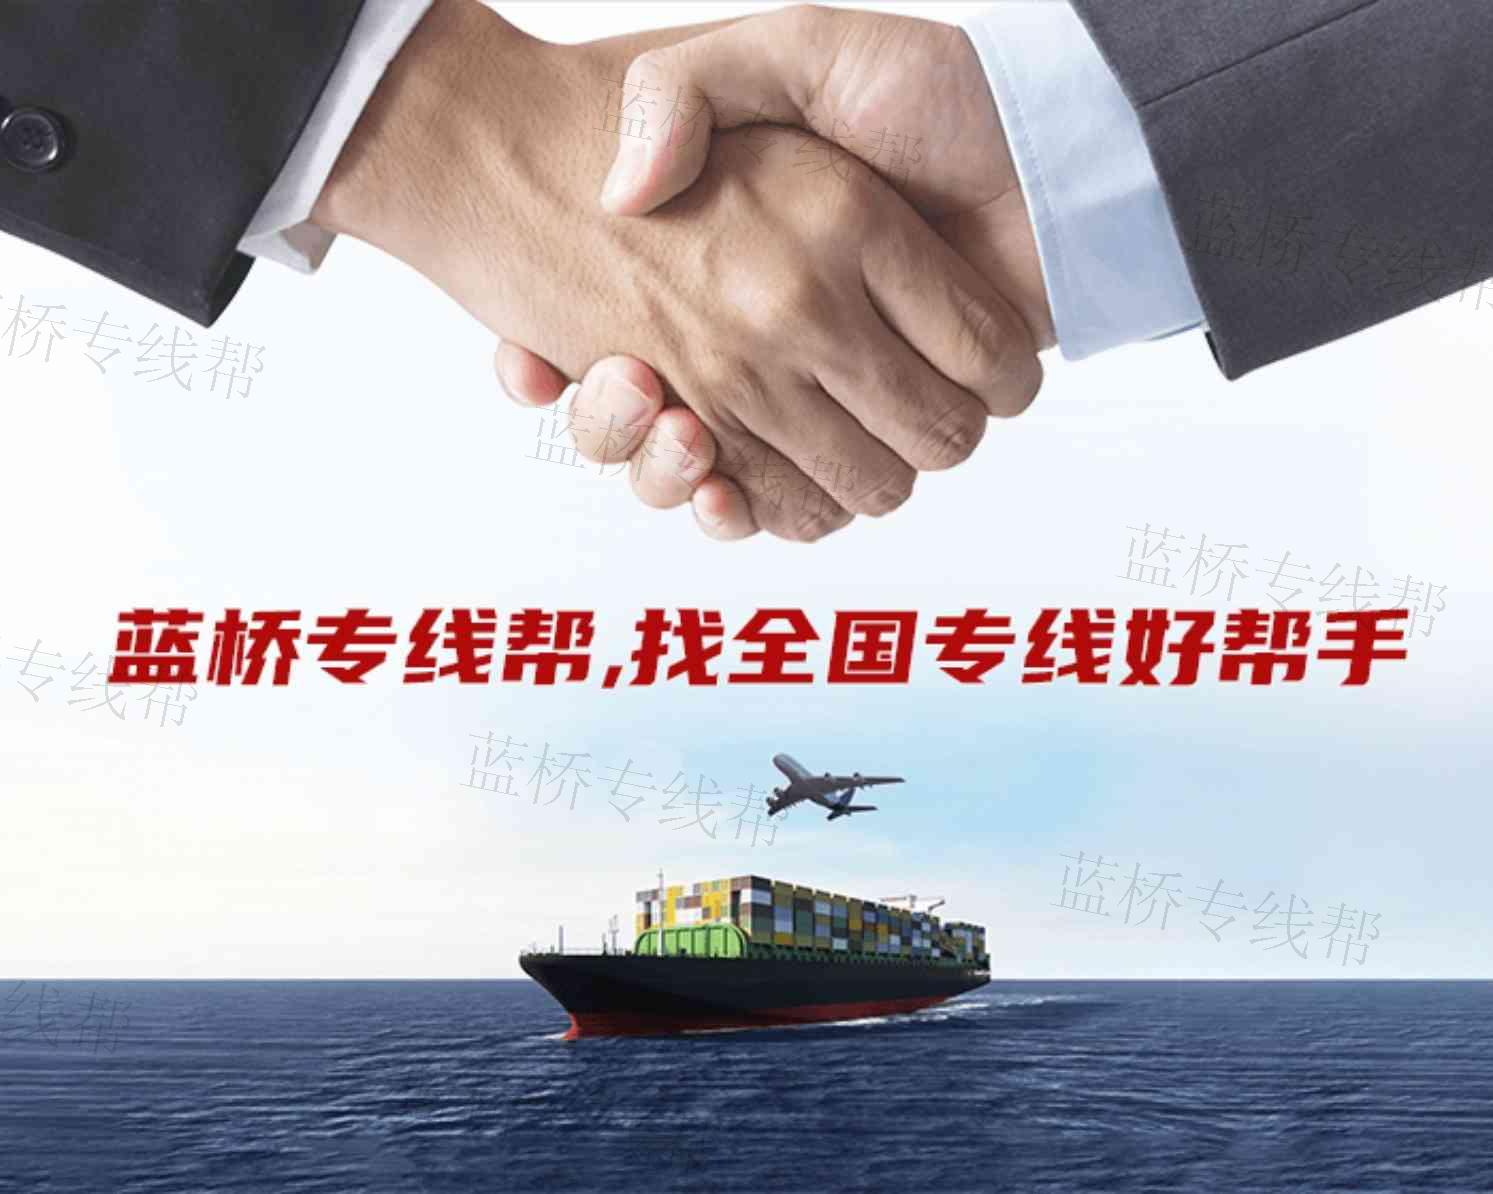 北京顺桥鹏程供应链管理有限公司